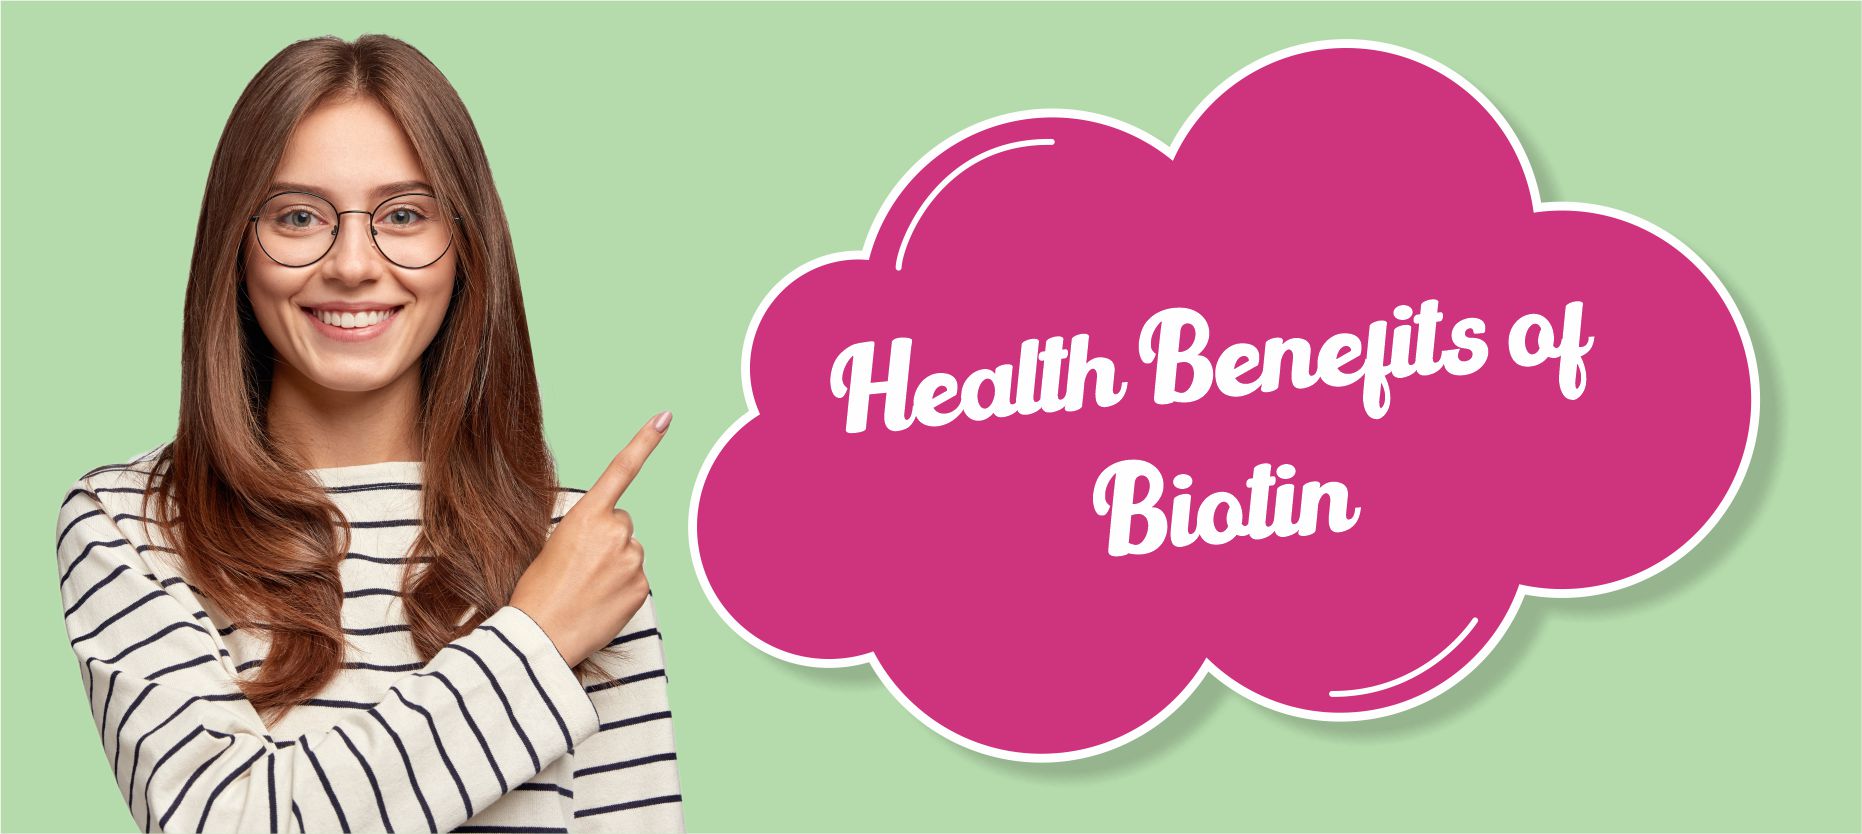 Helath Benefits of Biotin